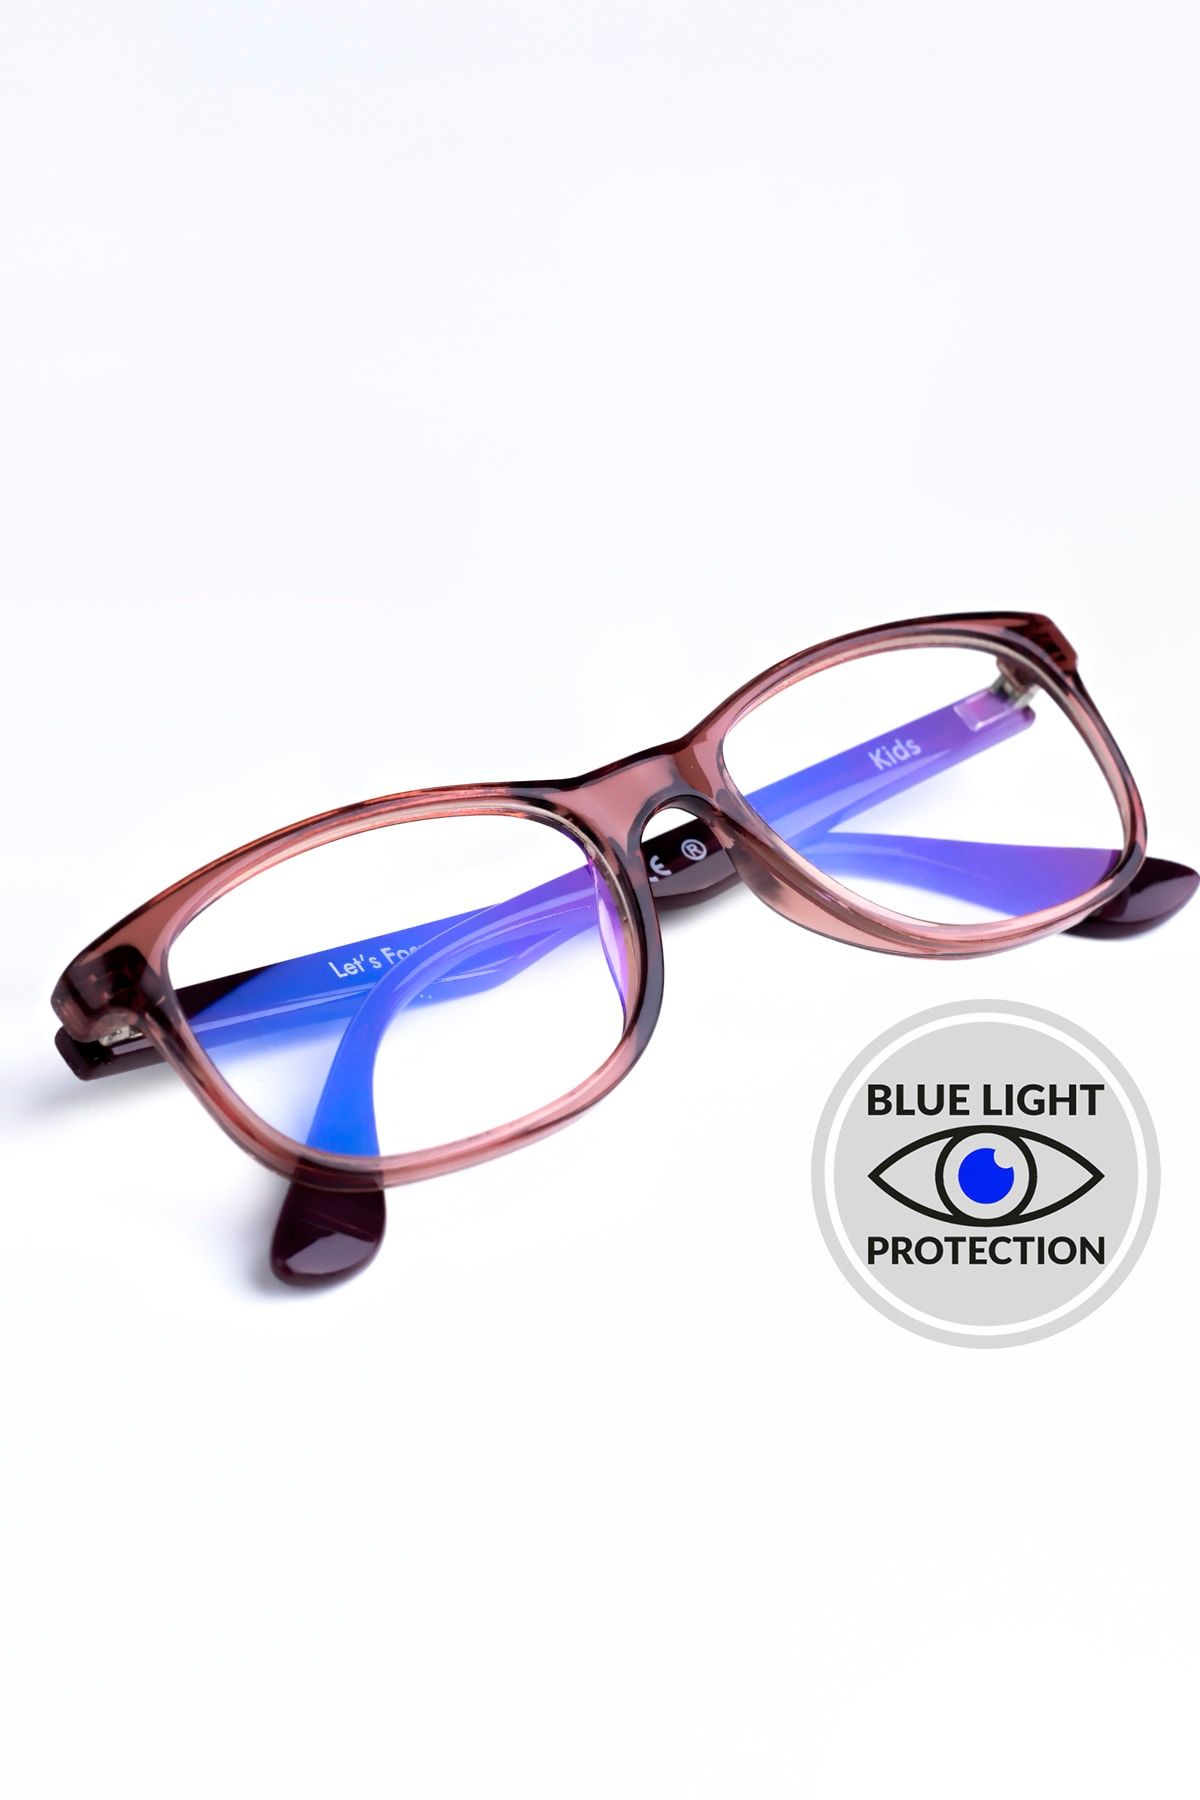 Focus On Gül Kurusu 2-5 Yaş Mavi Işık Filtreli Çocuk Ekran Gözlüğü